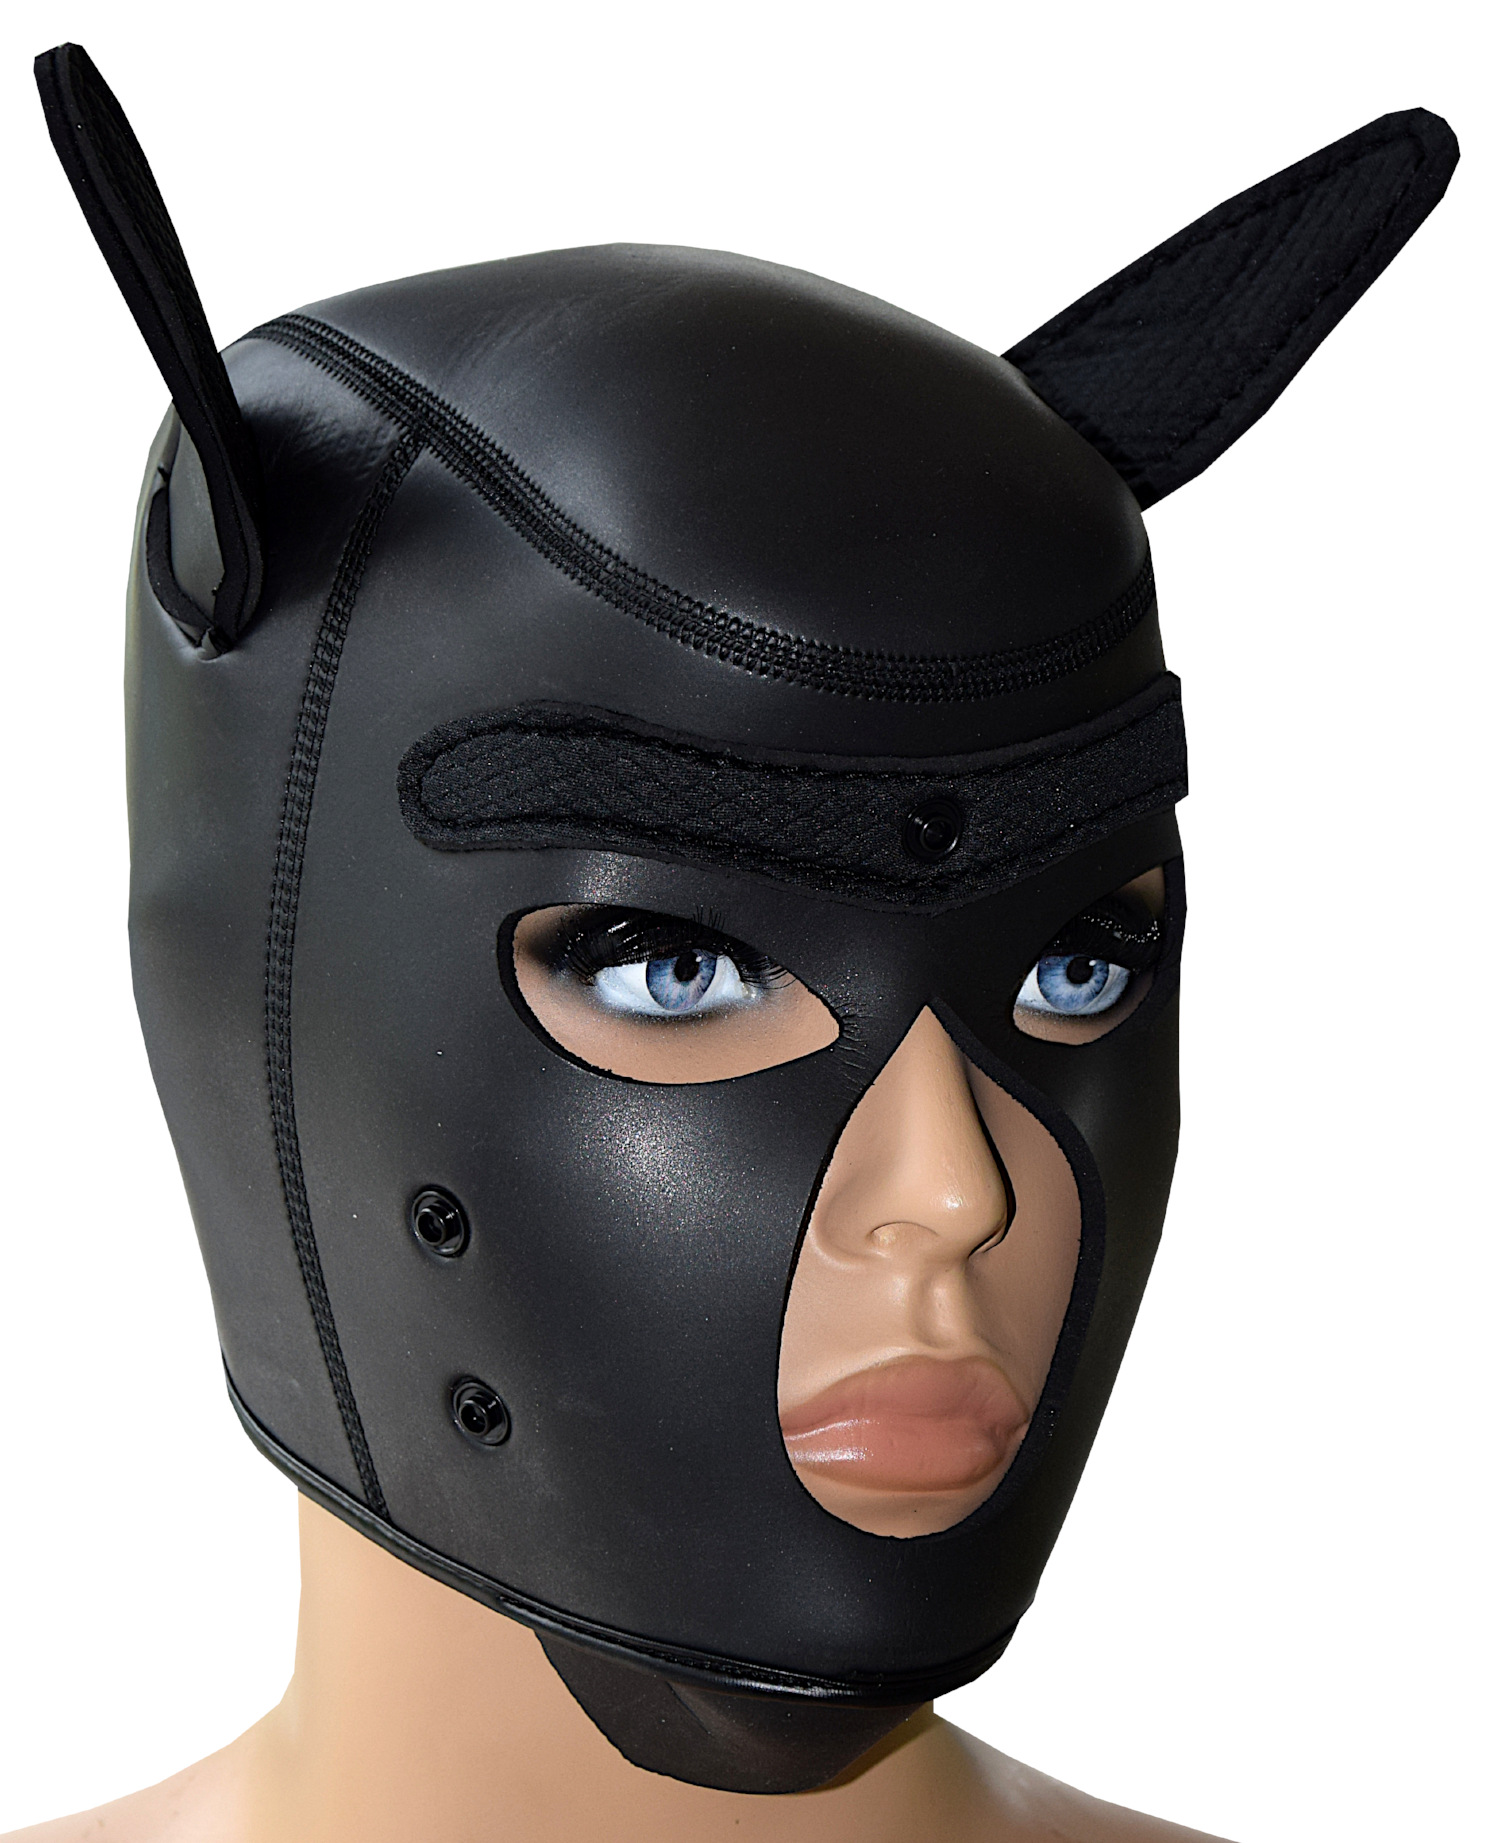 usmley Petplay Puppy Maske Schwarz Hundemaske Leder mit Ohren,Unisex Einheitsgr/ö/ße